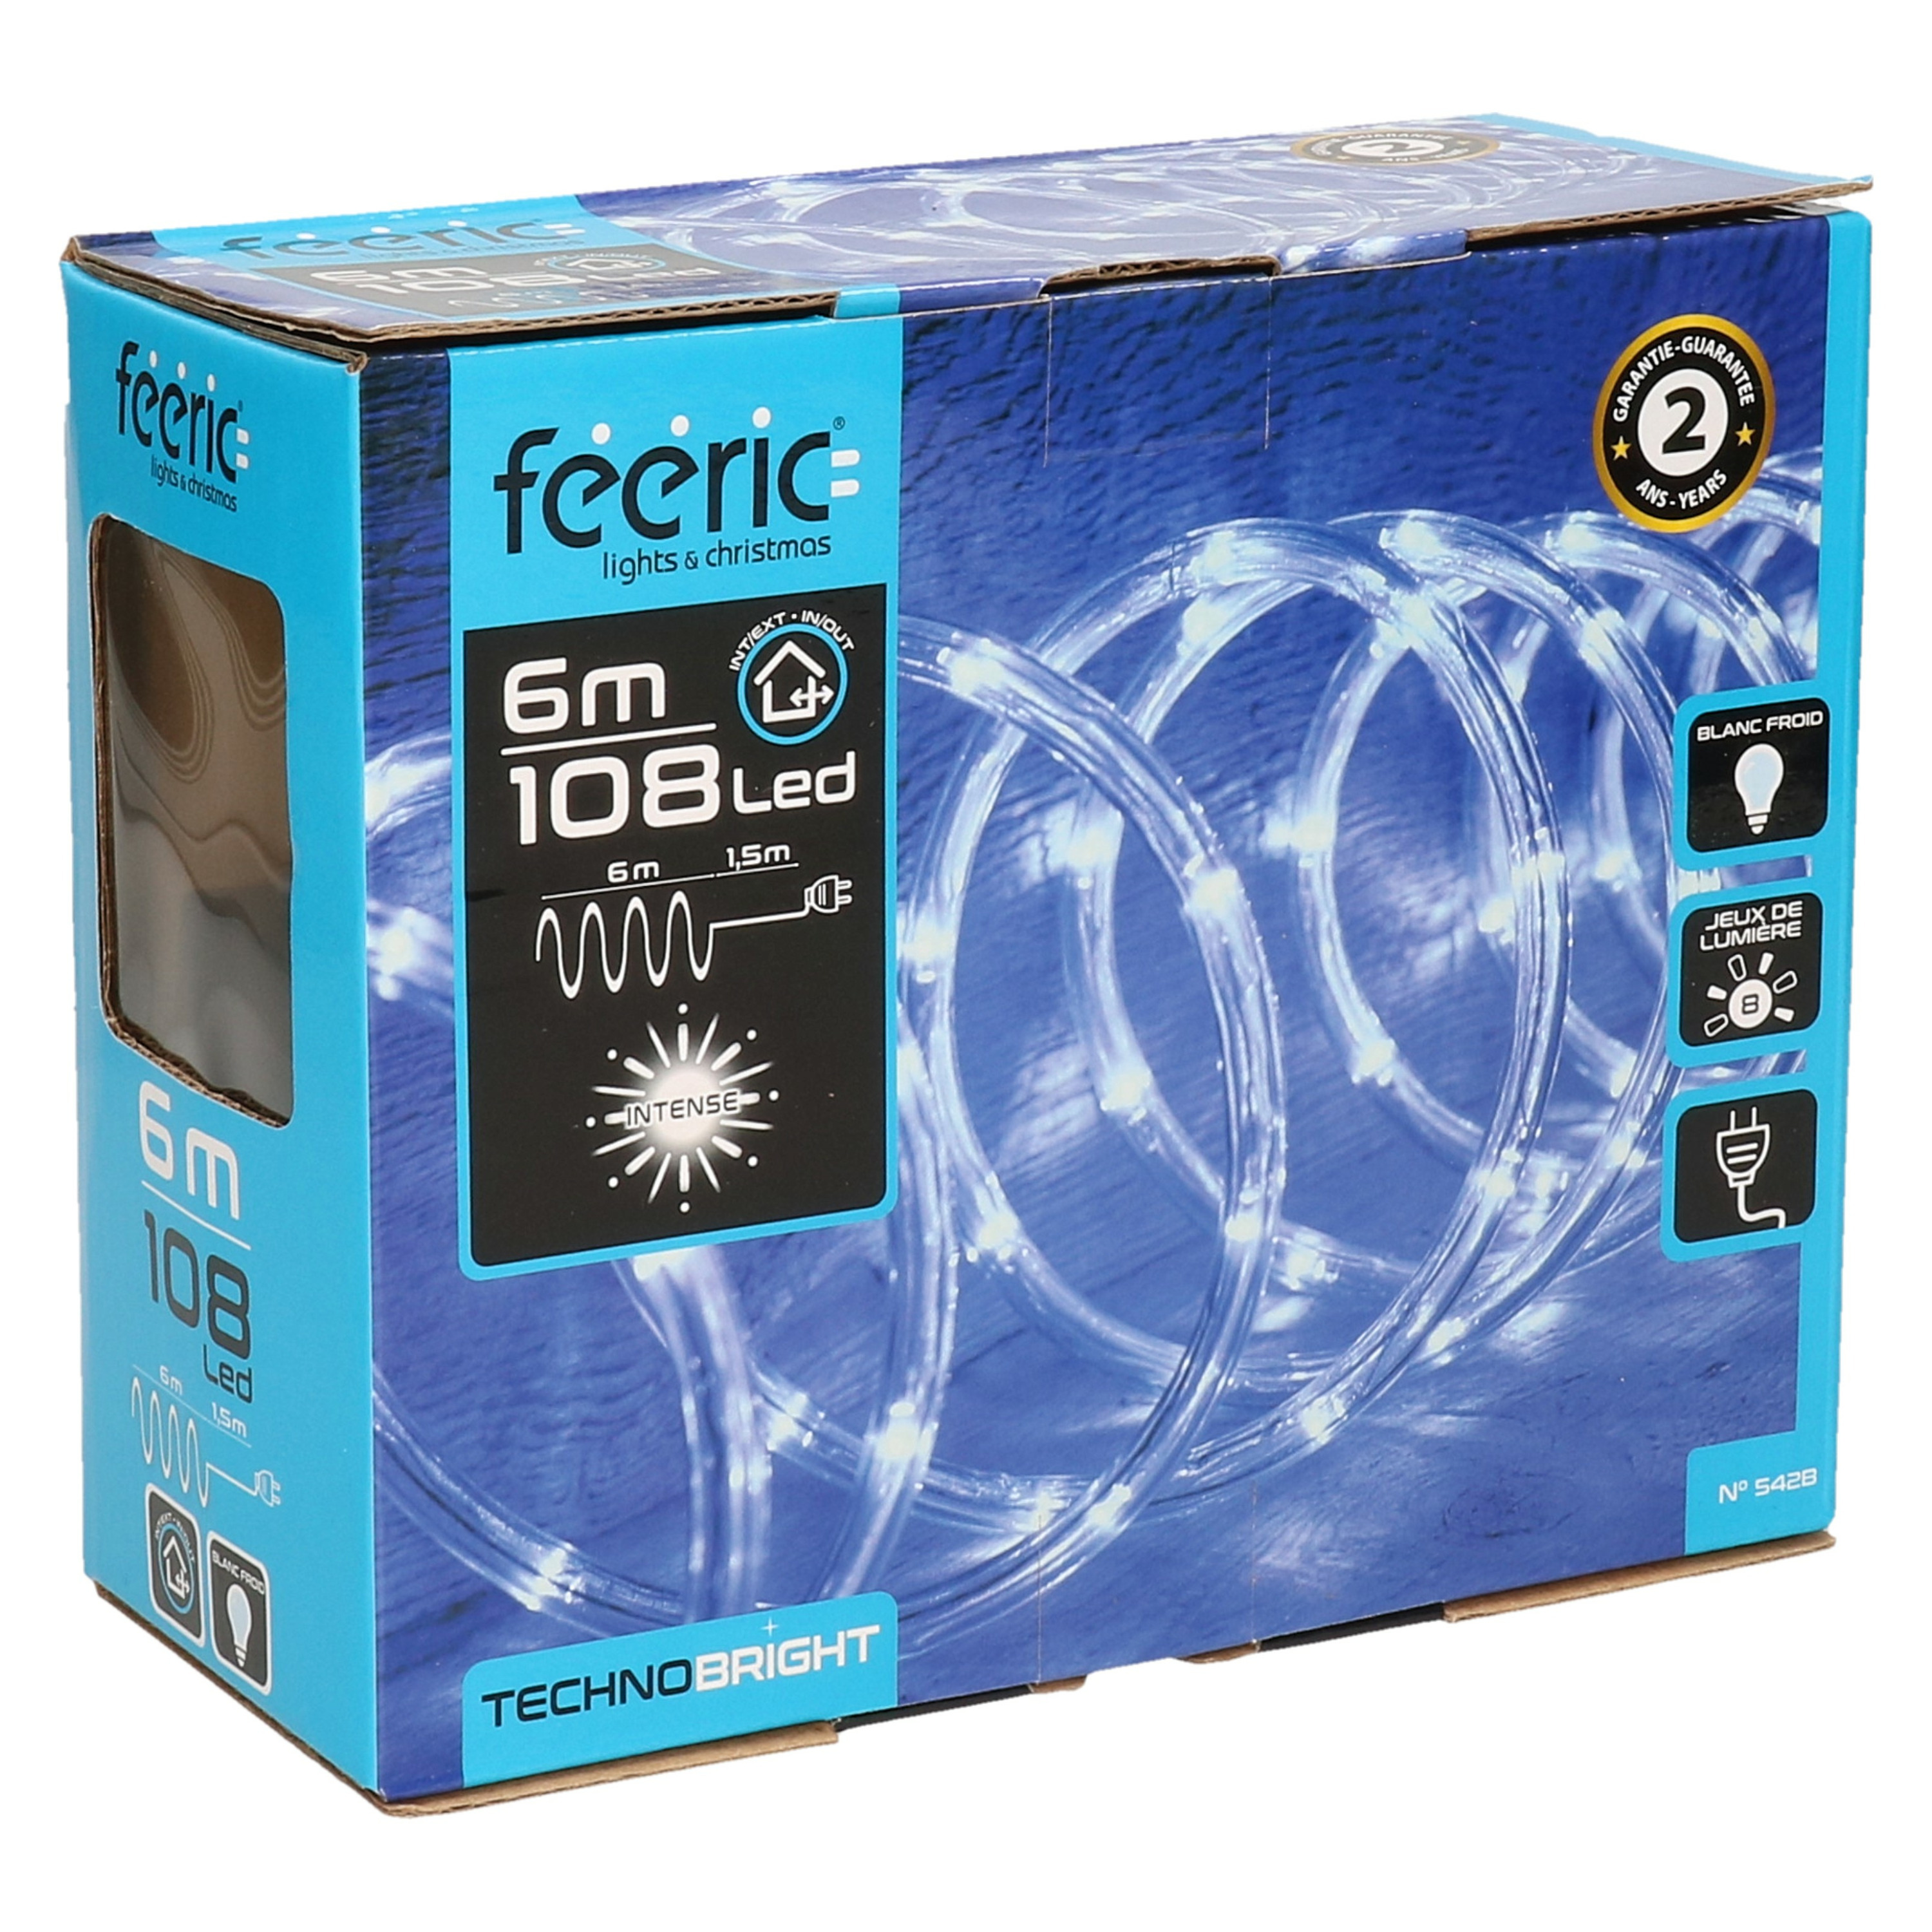 Feeric lights & Christmas Lichtslang 6M helder wit 108 LEDs